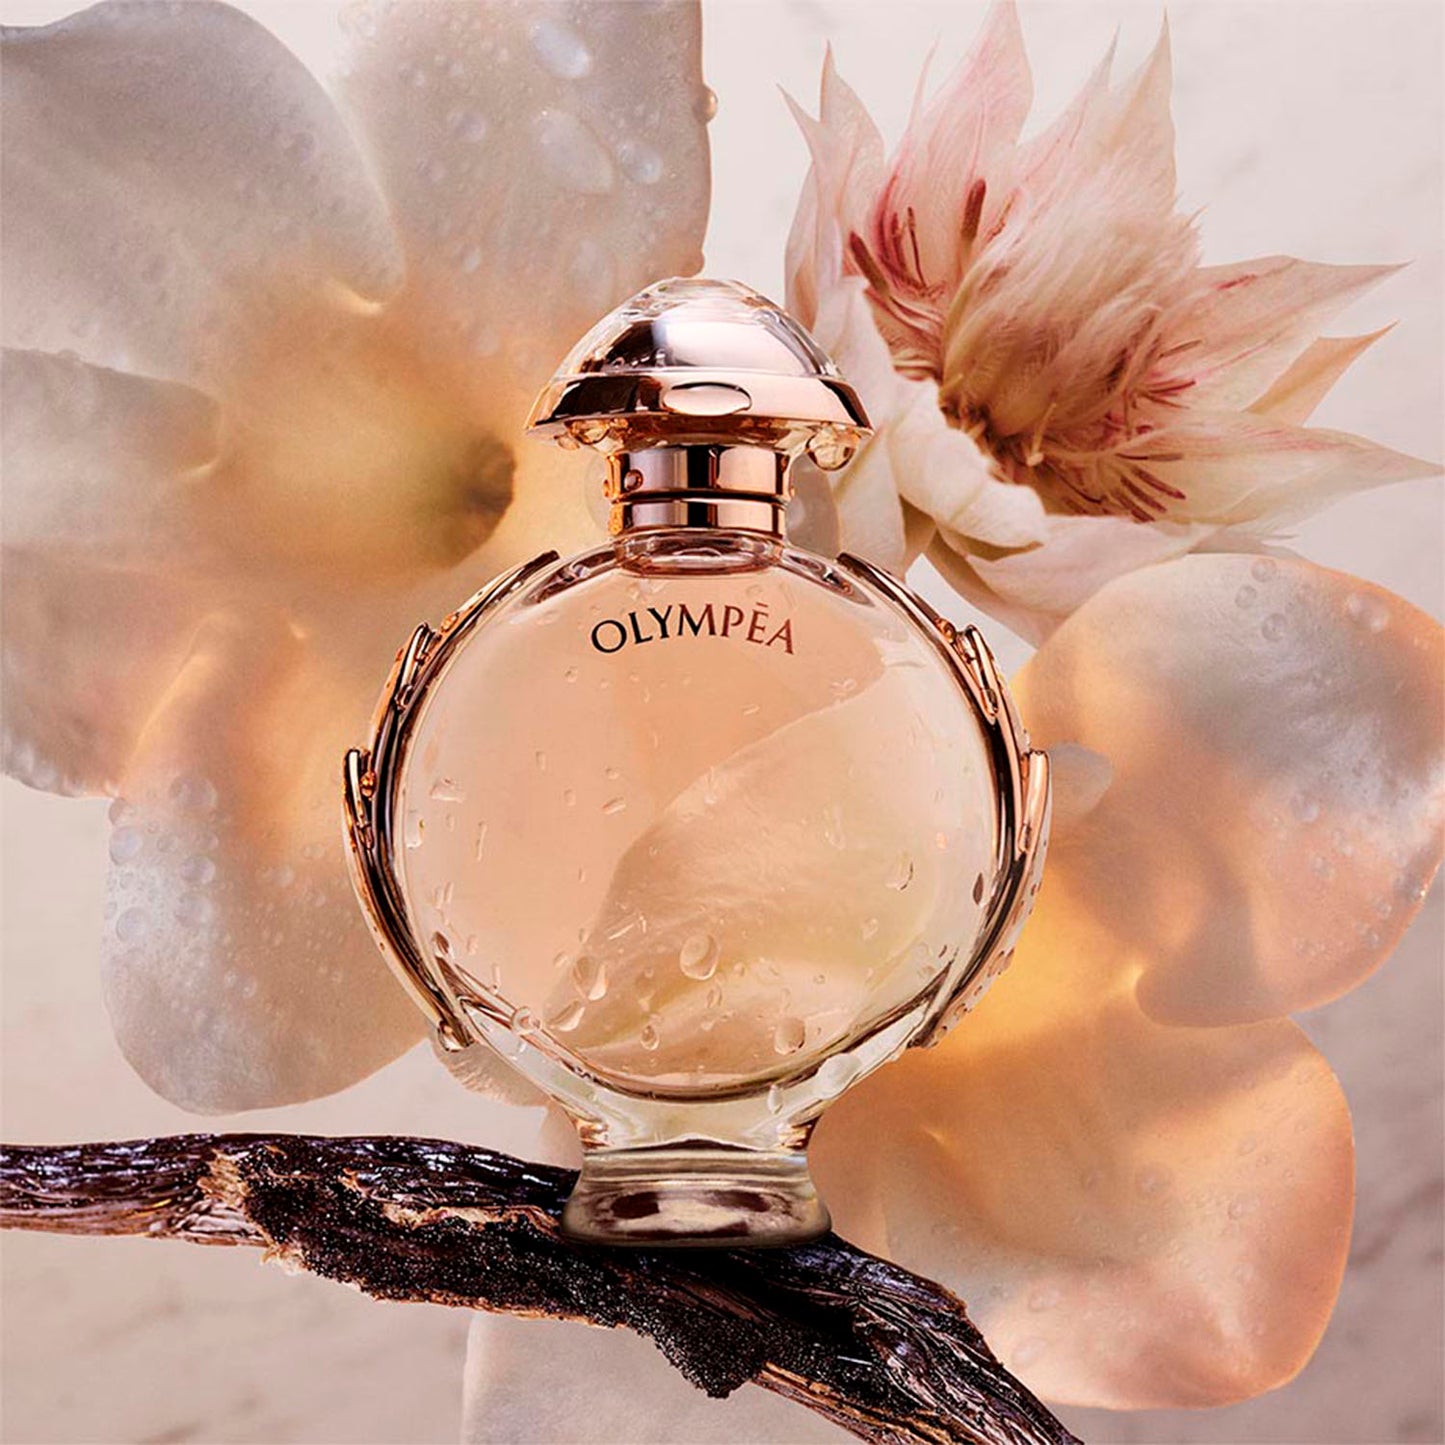 Olympea - Perfumería First Bolivia